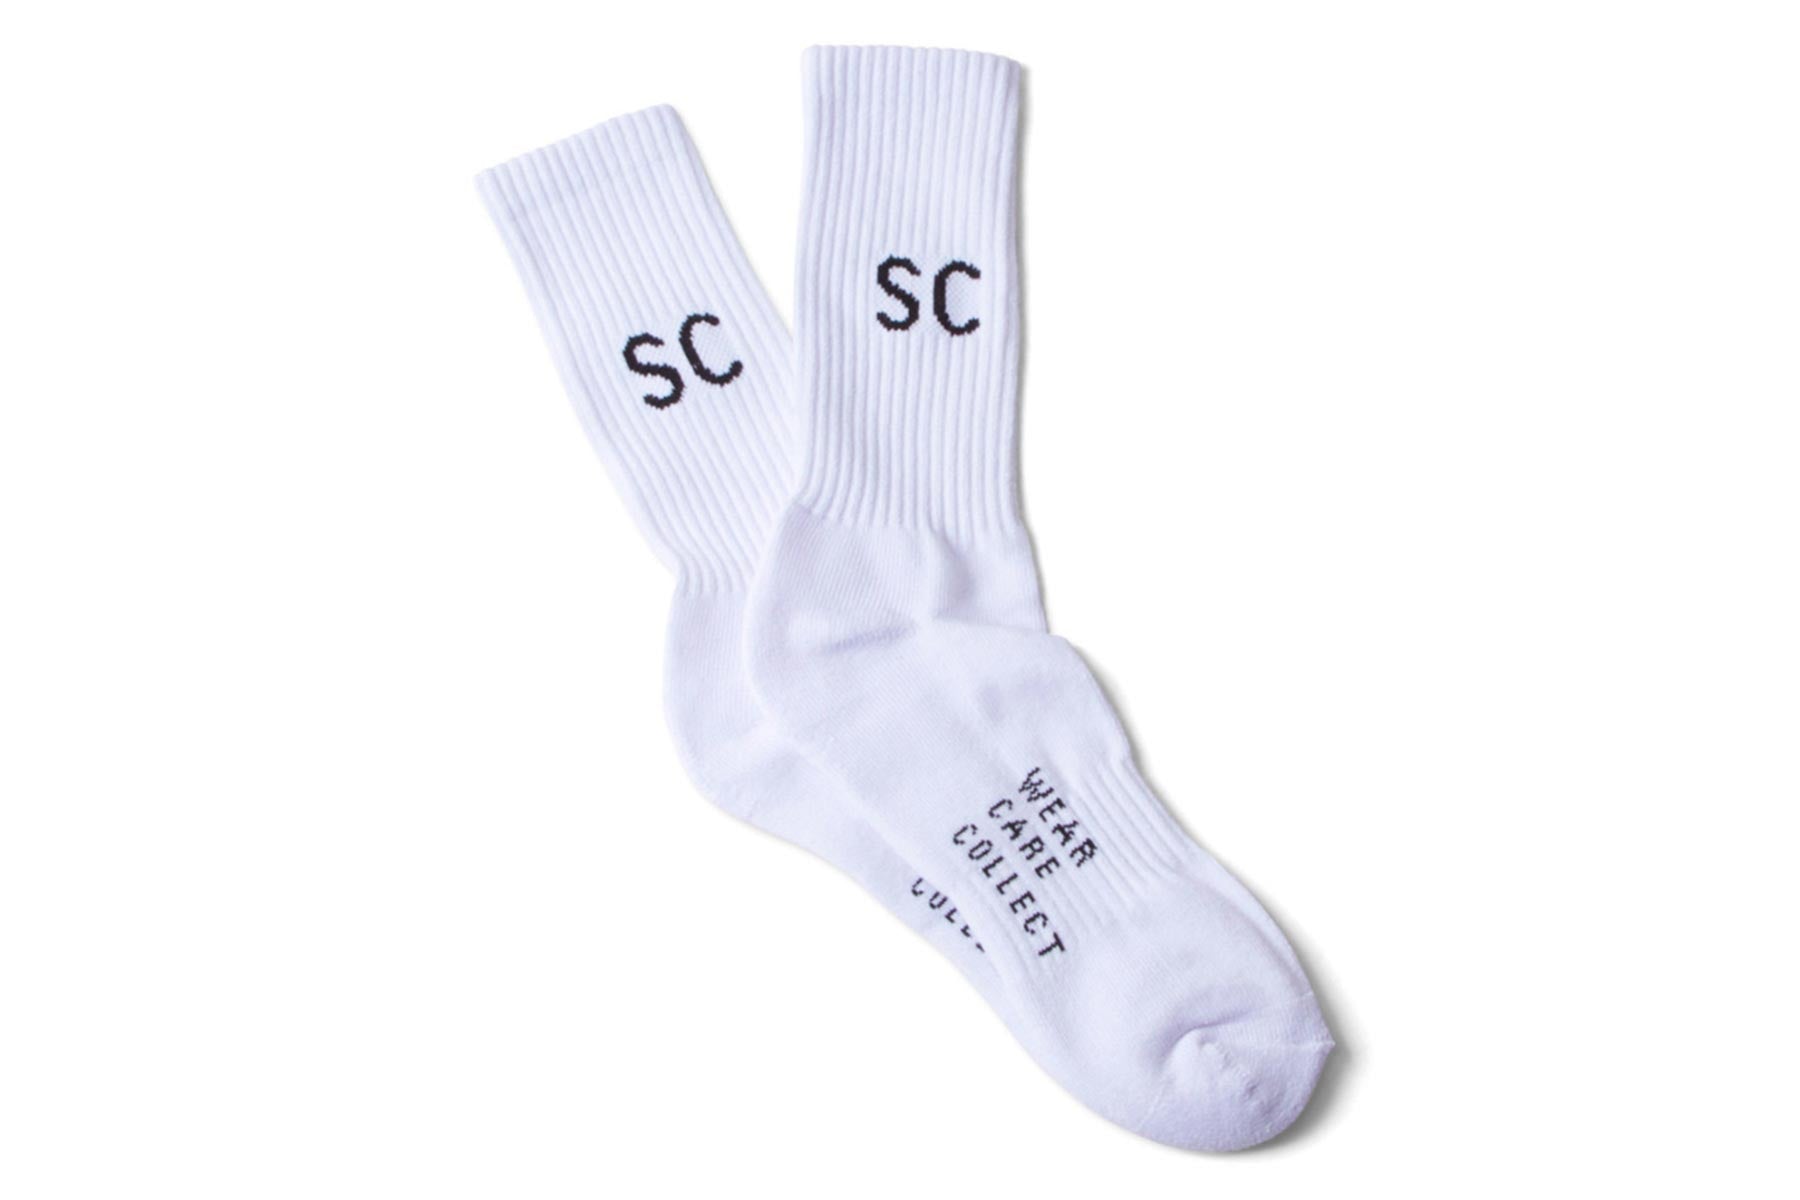 SC Fam Crew Socks (1 Pack) - White / Black